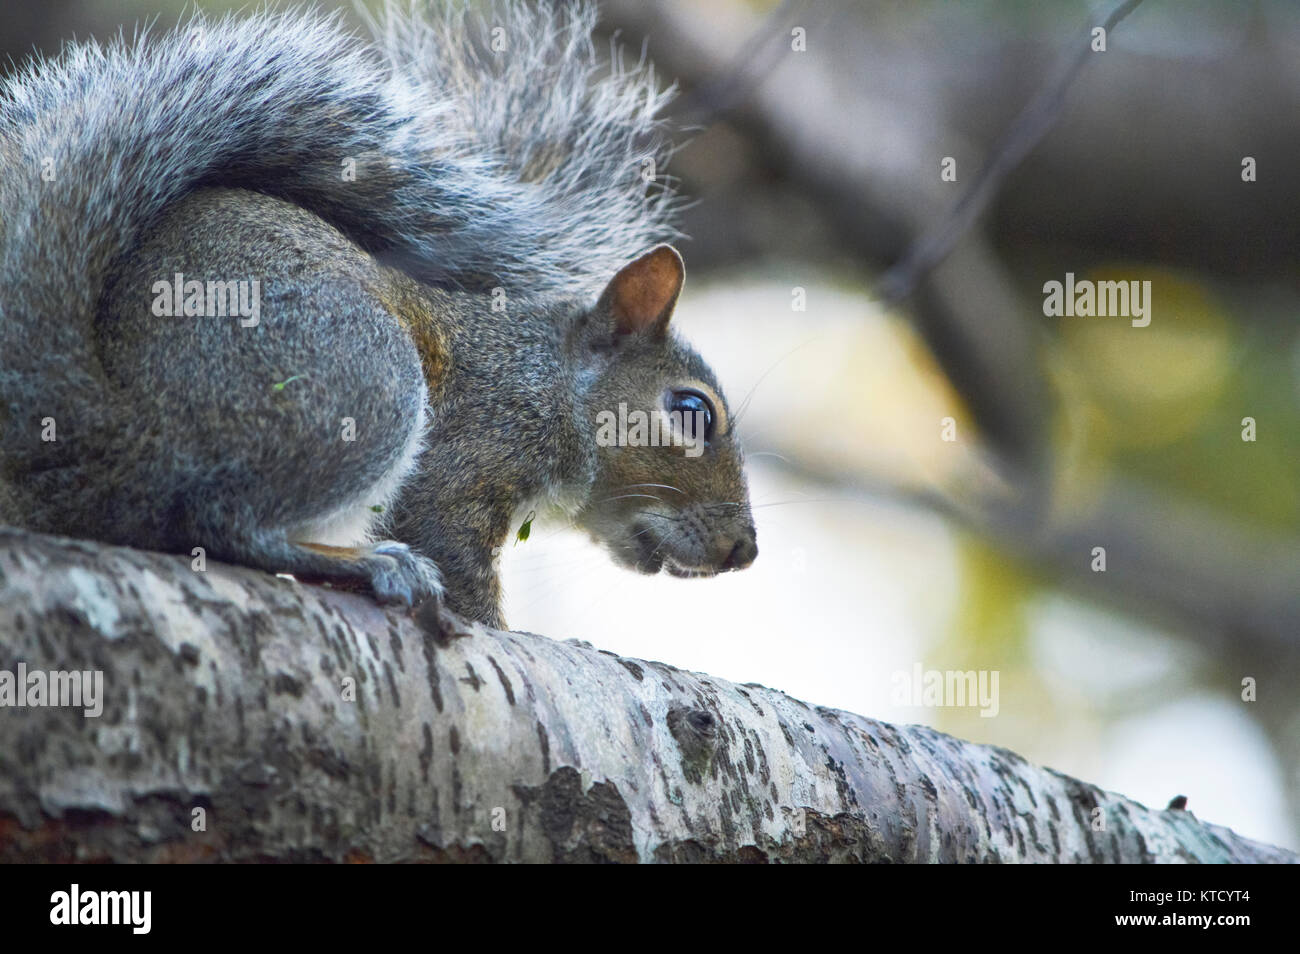 Eichhörnchen heraus hängen an einem Baum Stockfoto